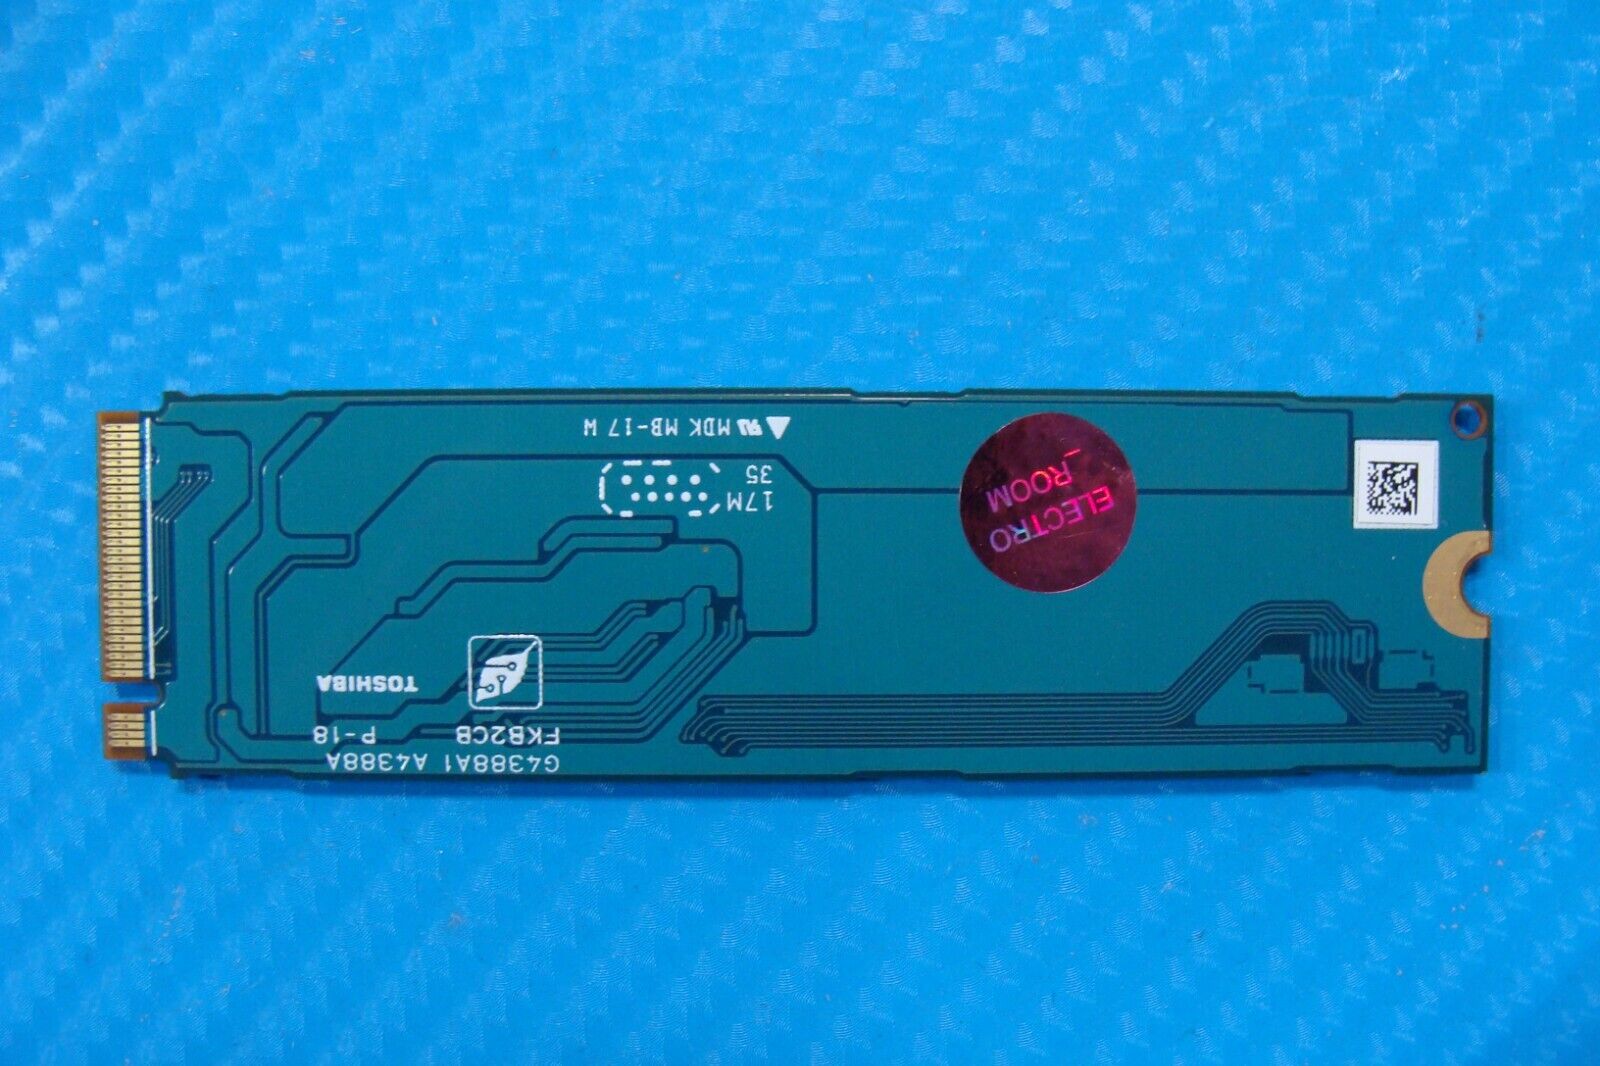 Dell 7490 Toshiba 512GB NVMe M.2 SSD Solid State Drive KXG5AZNV512G 000J73